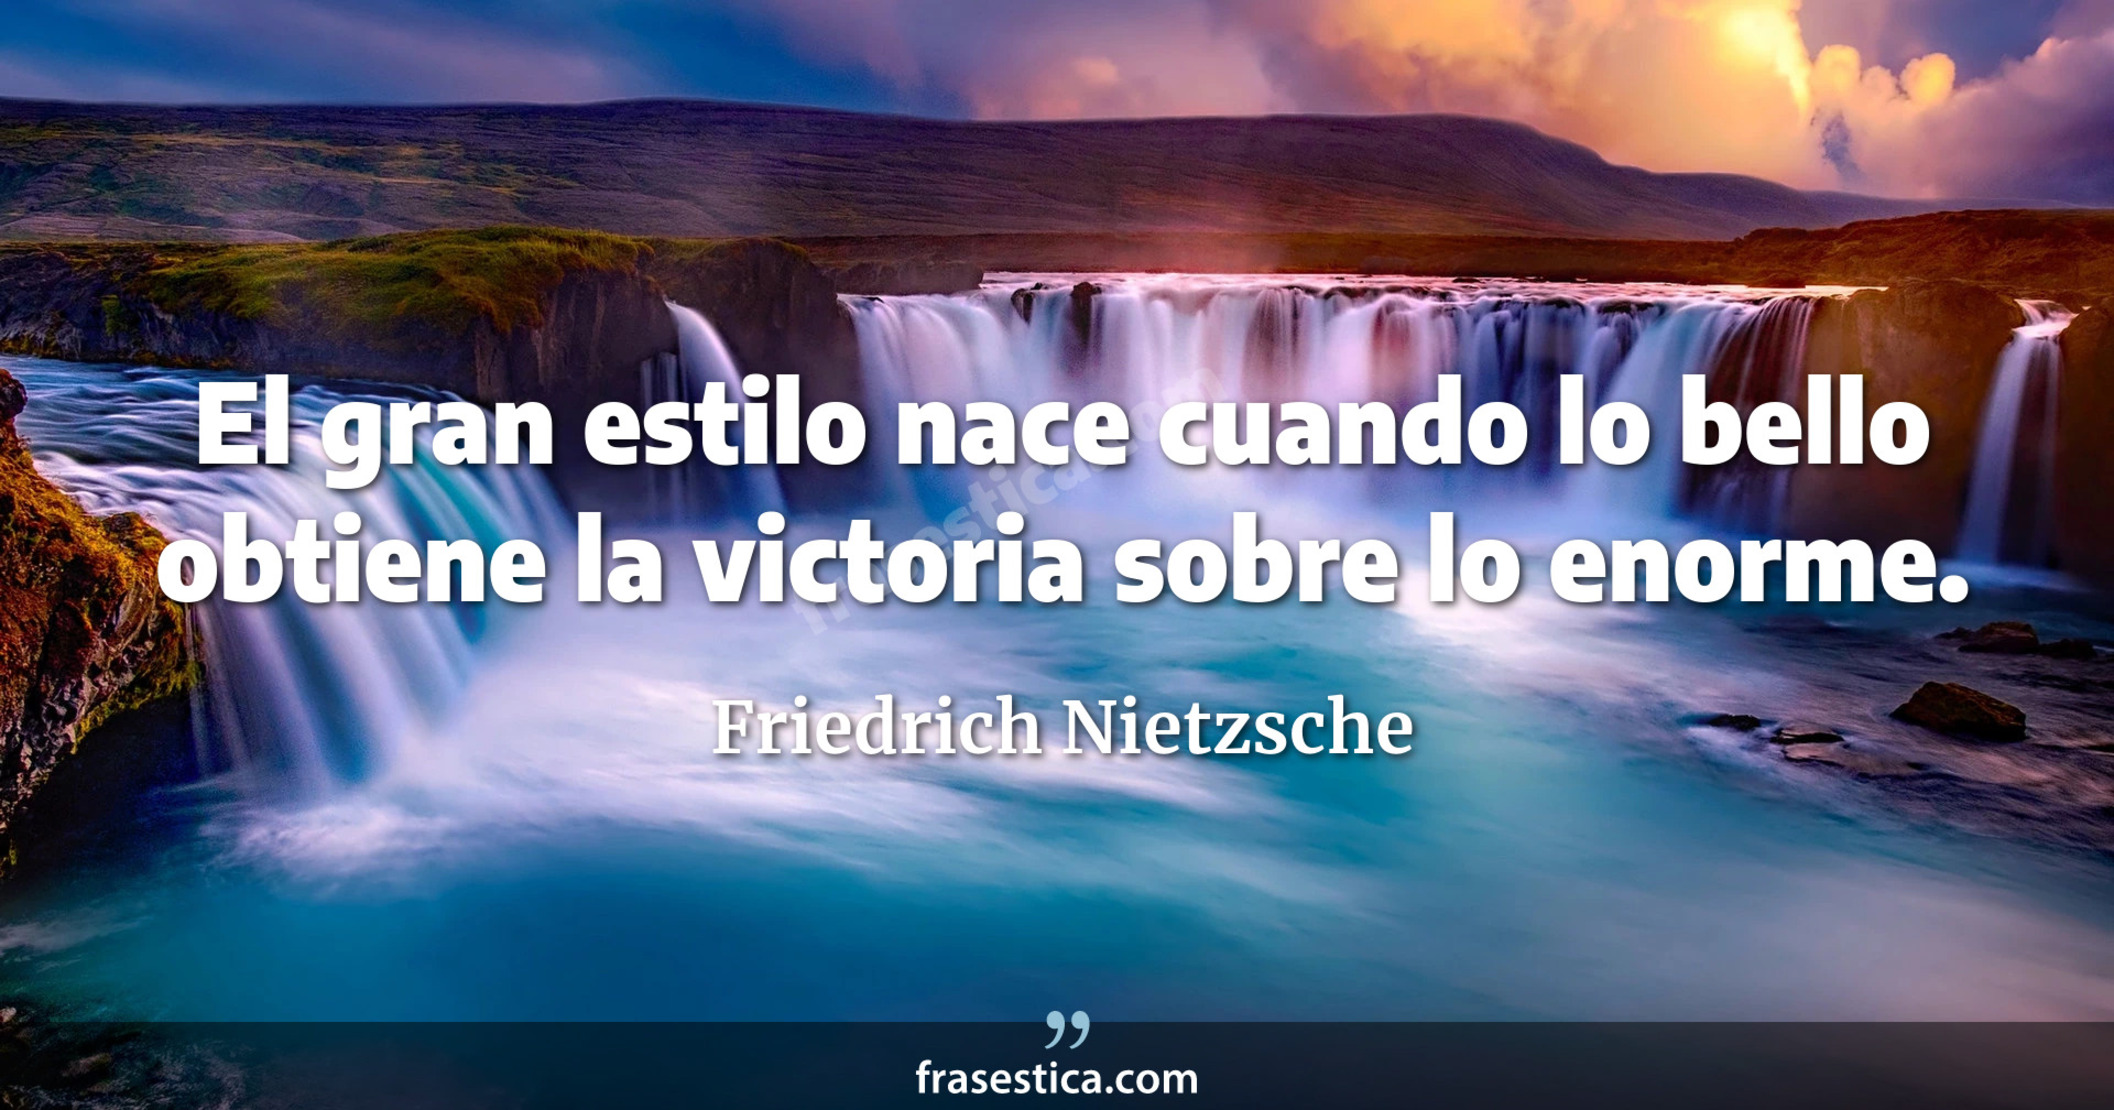 El gran estilo nace cuando lo bello obtiene la victoria sobre lo enorme. - Friedrich Nietzsche